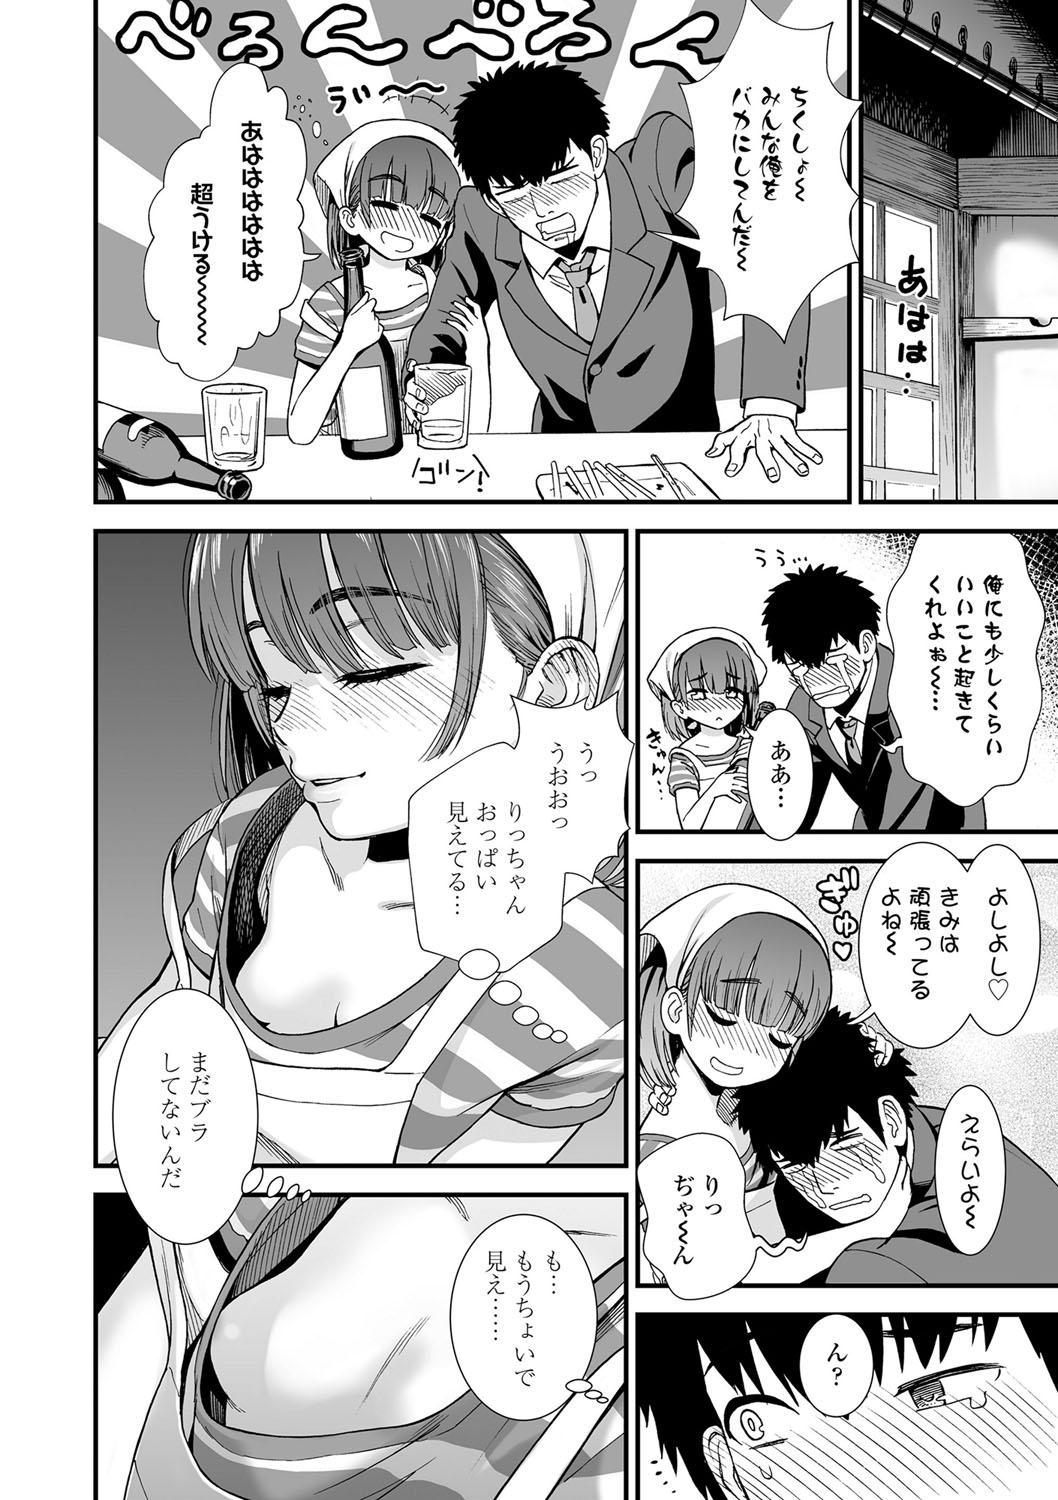 Teenfuns Ore wa Kuzu dakara koso Sukuwareru Kenri ga Aru! Body - Page 9